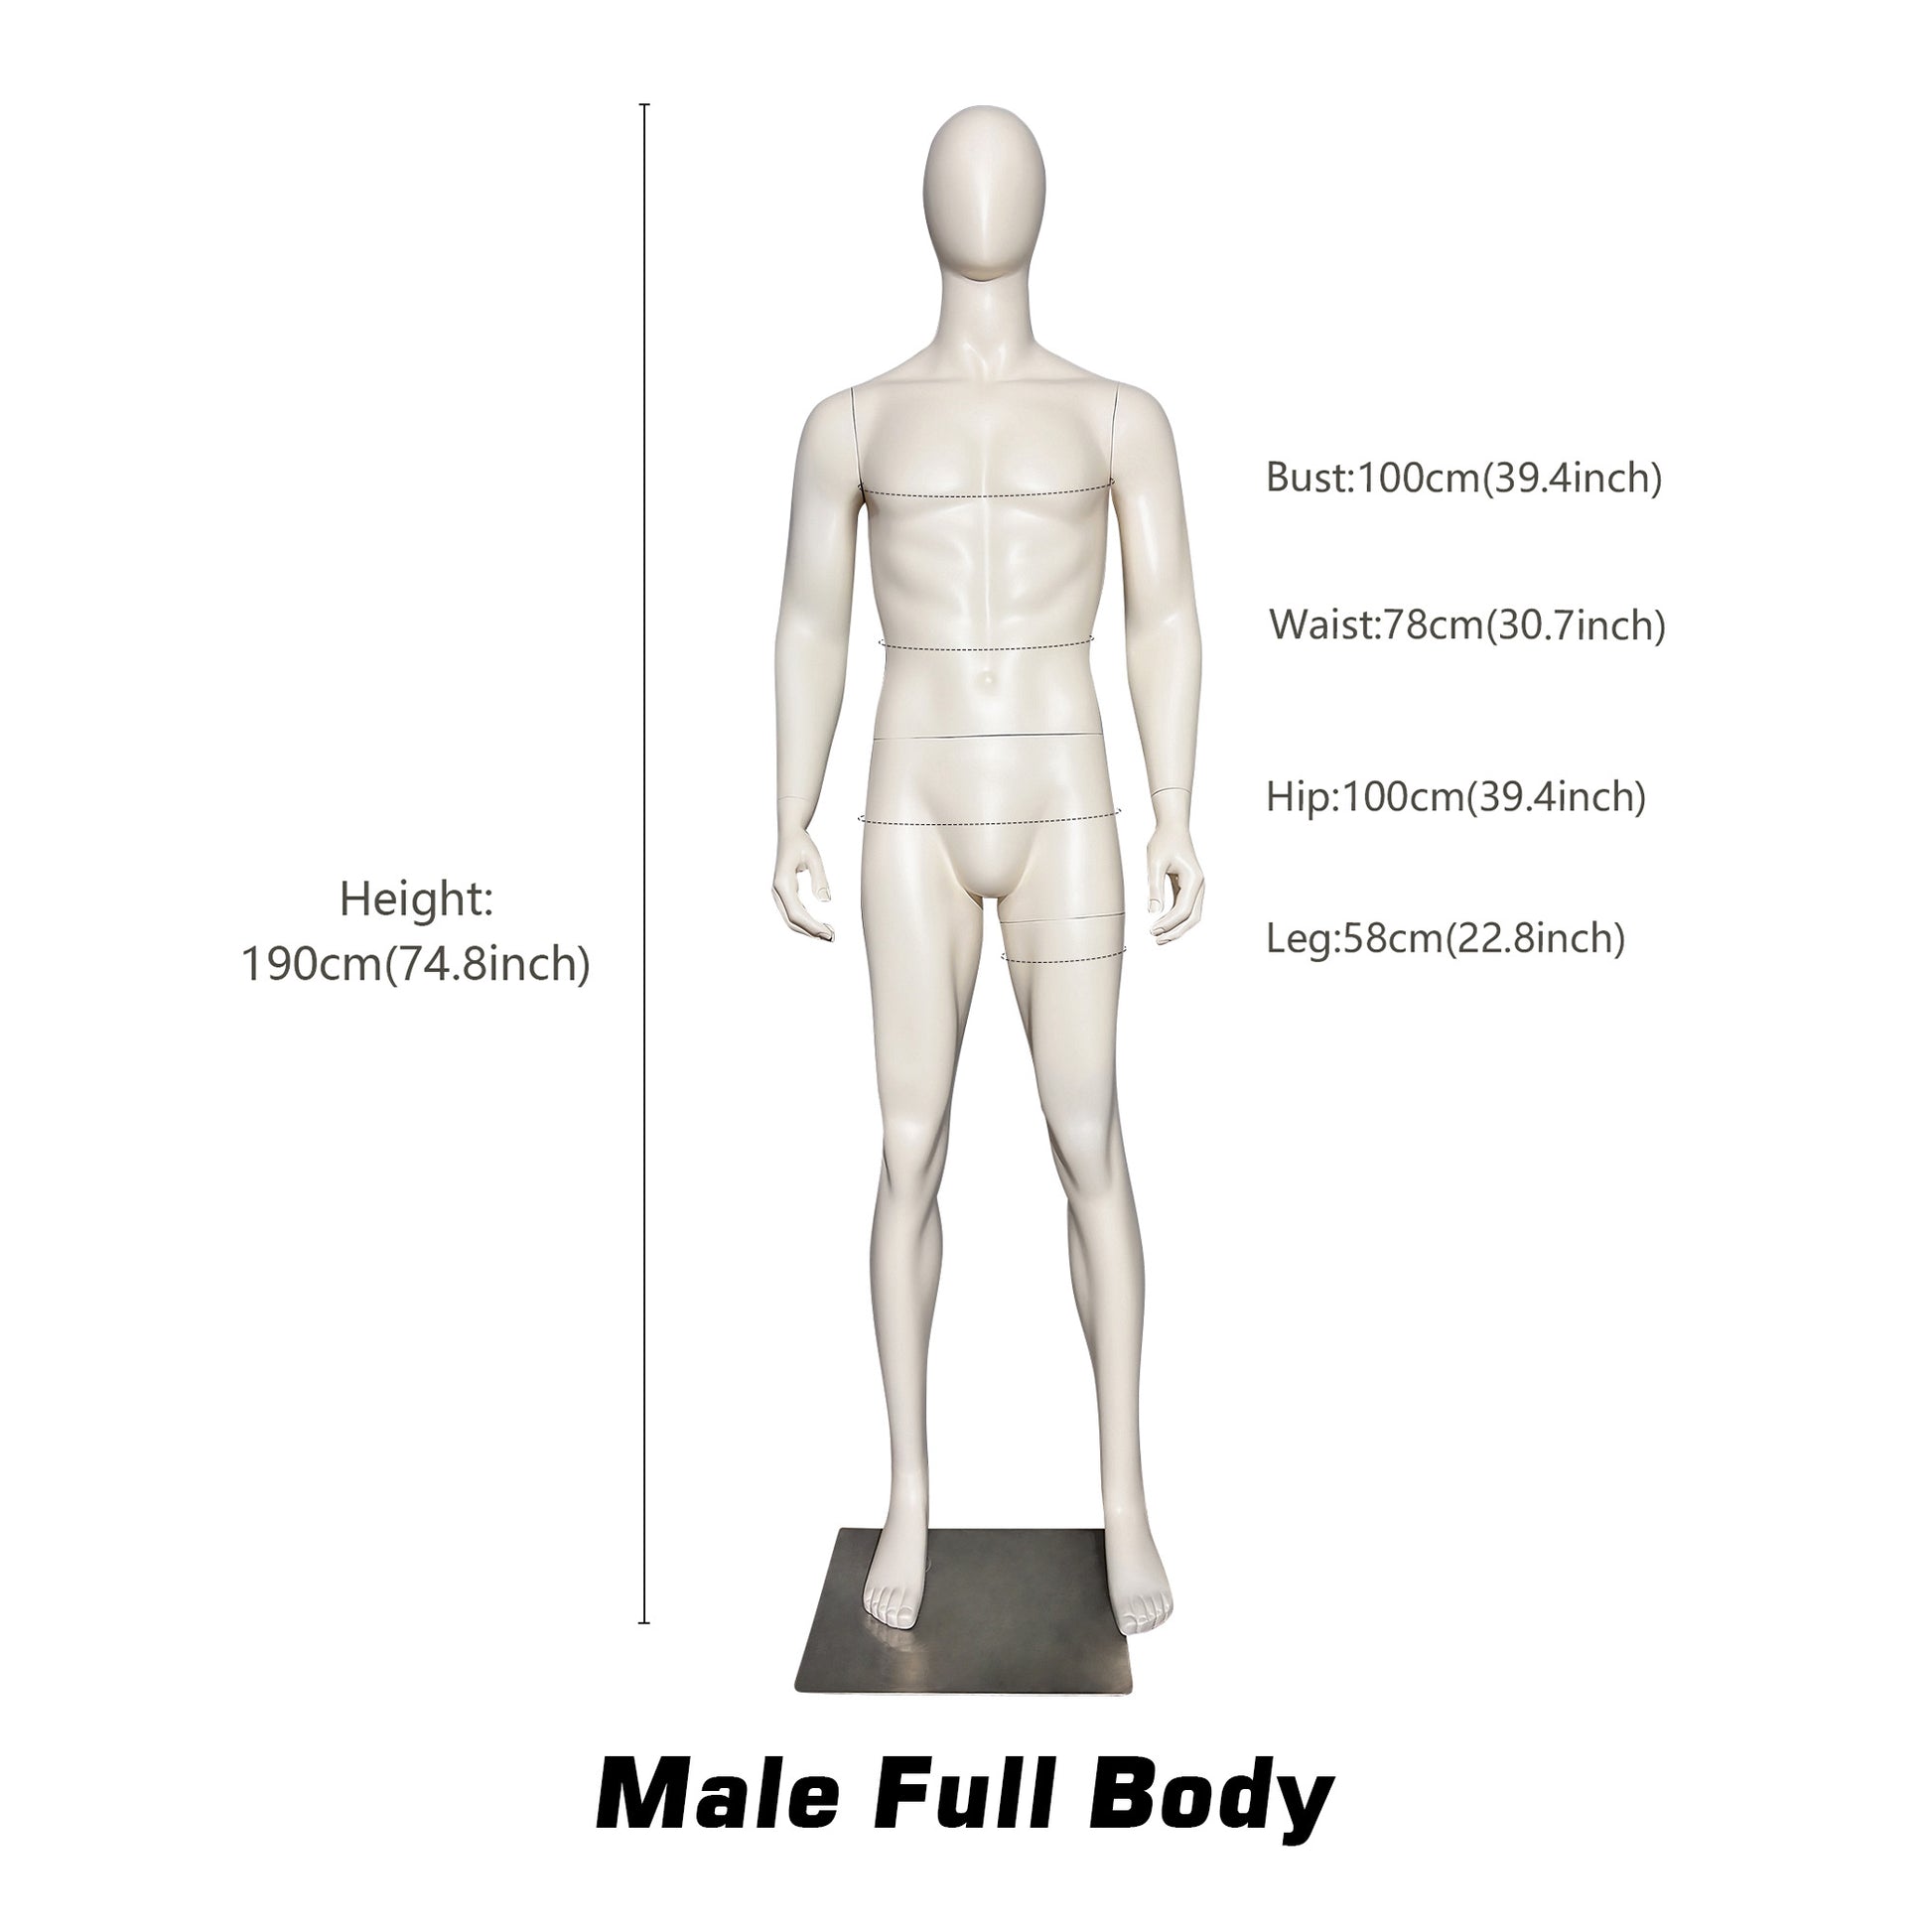 Luxury Female/Male Full Body Mannequin,Matt Beige White Mannequin Torso,Mannequin For Clothing Window Standing Model Props Shot Dummy DE-LIANG